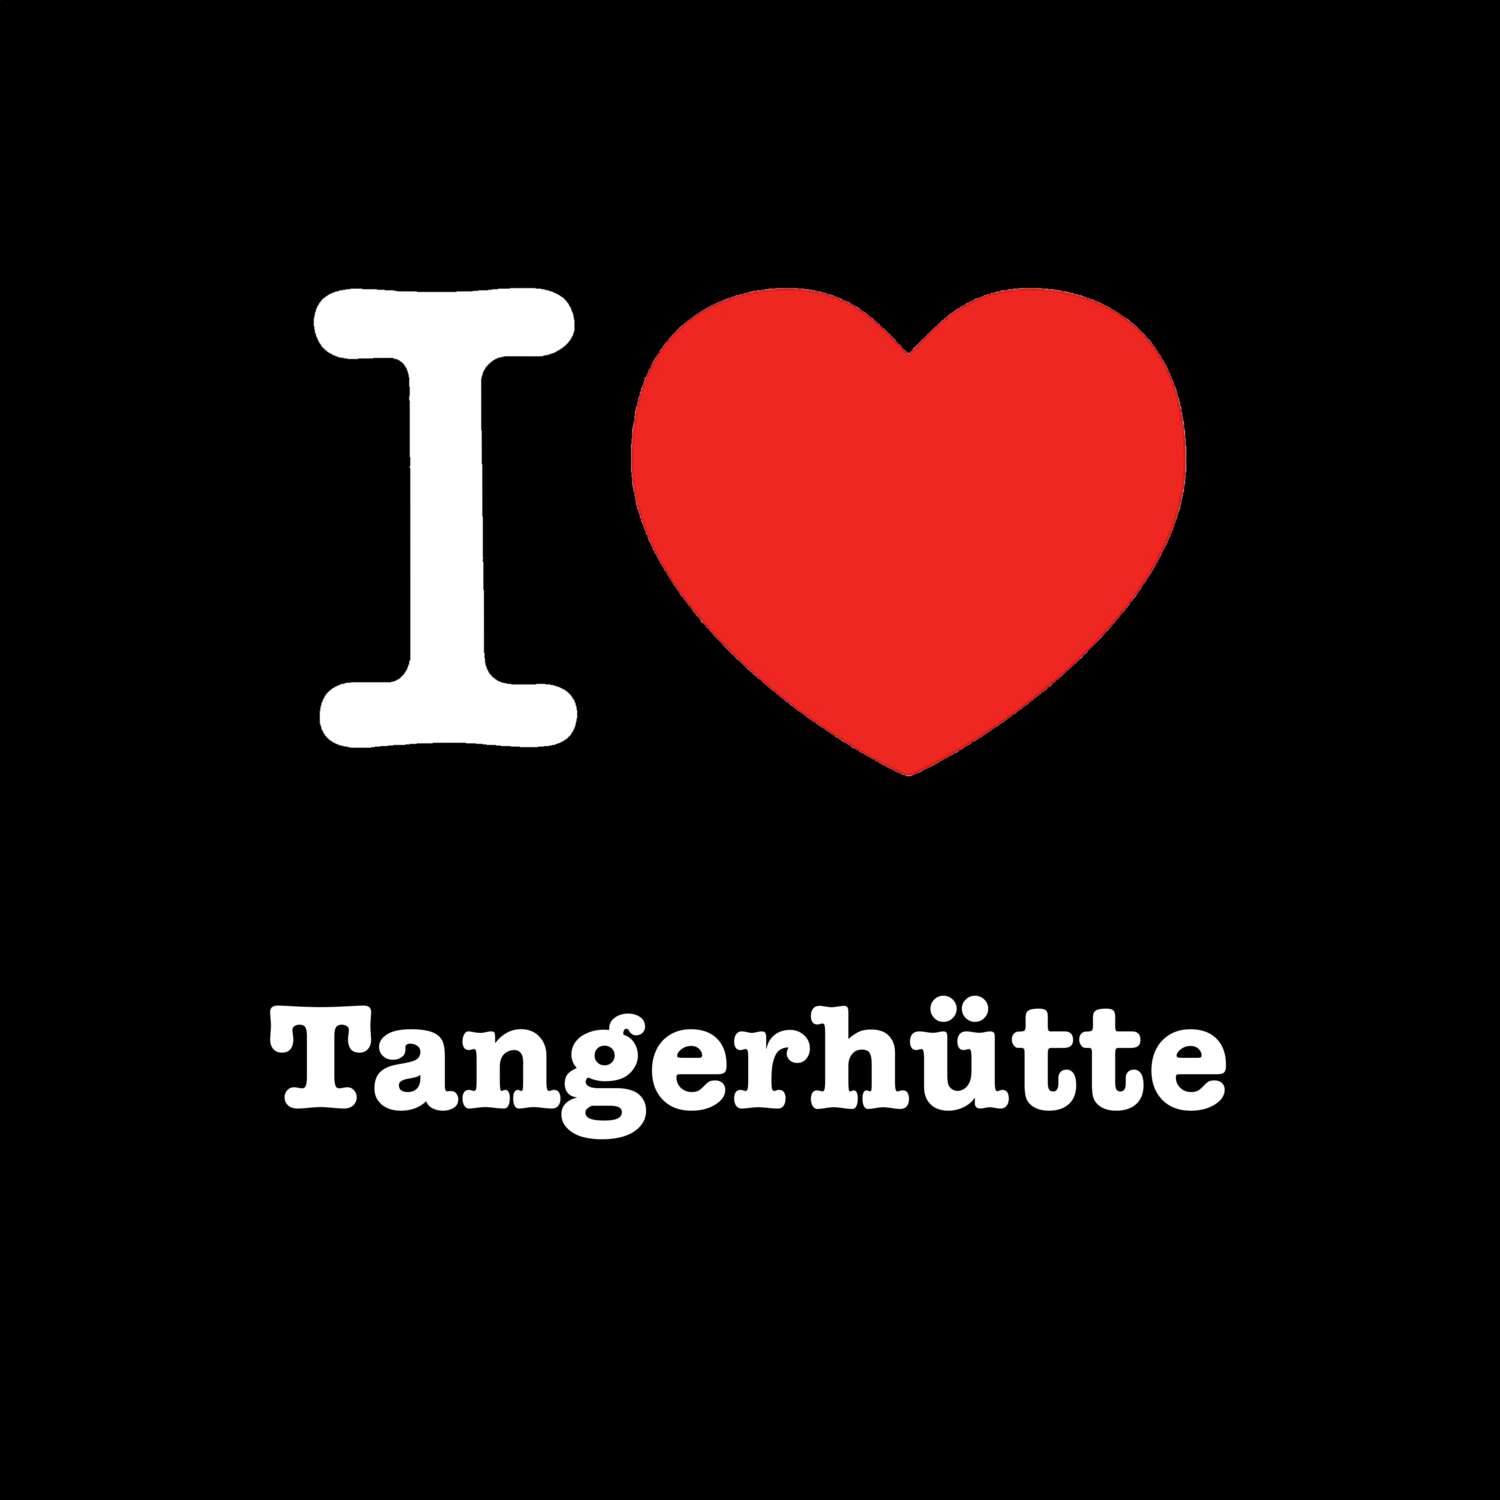 Tangerhütte T-Shirt »I love«